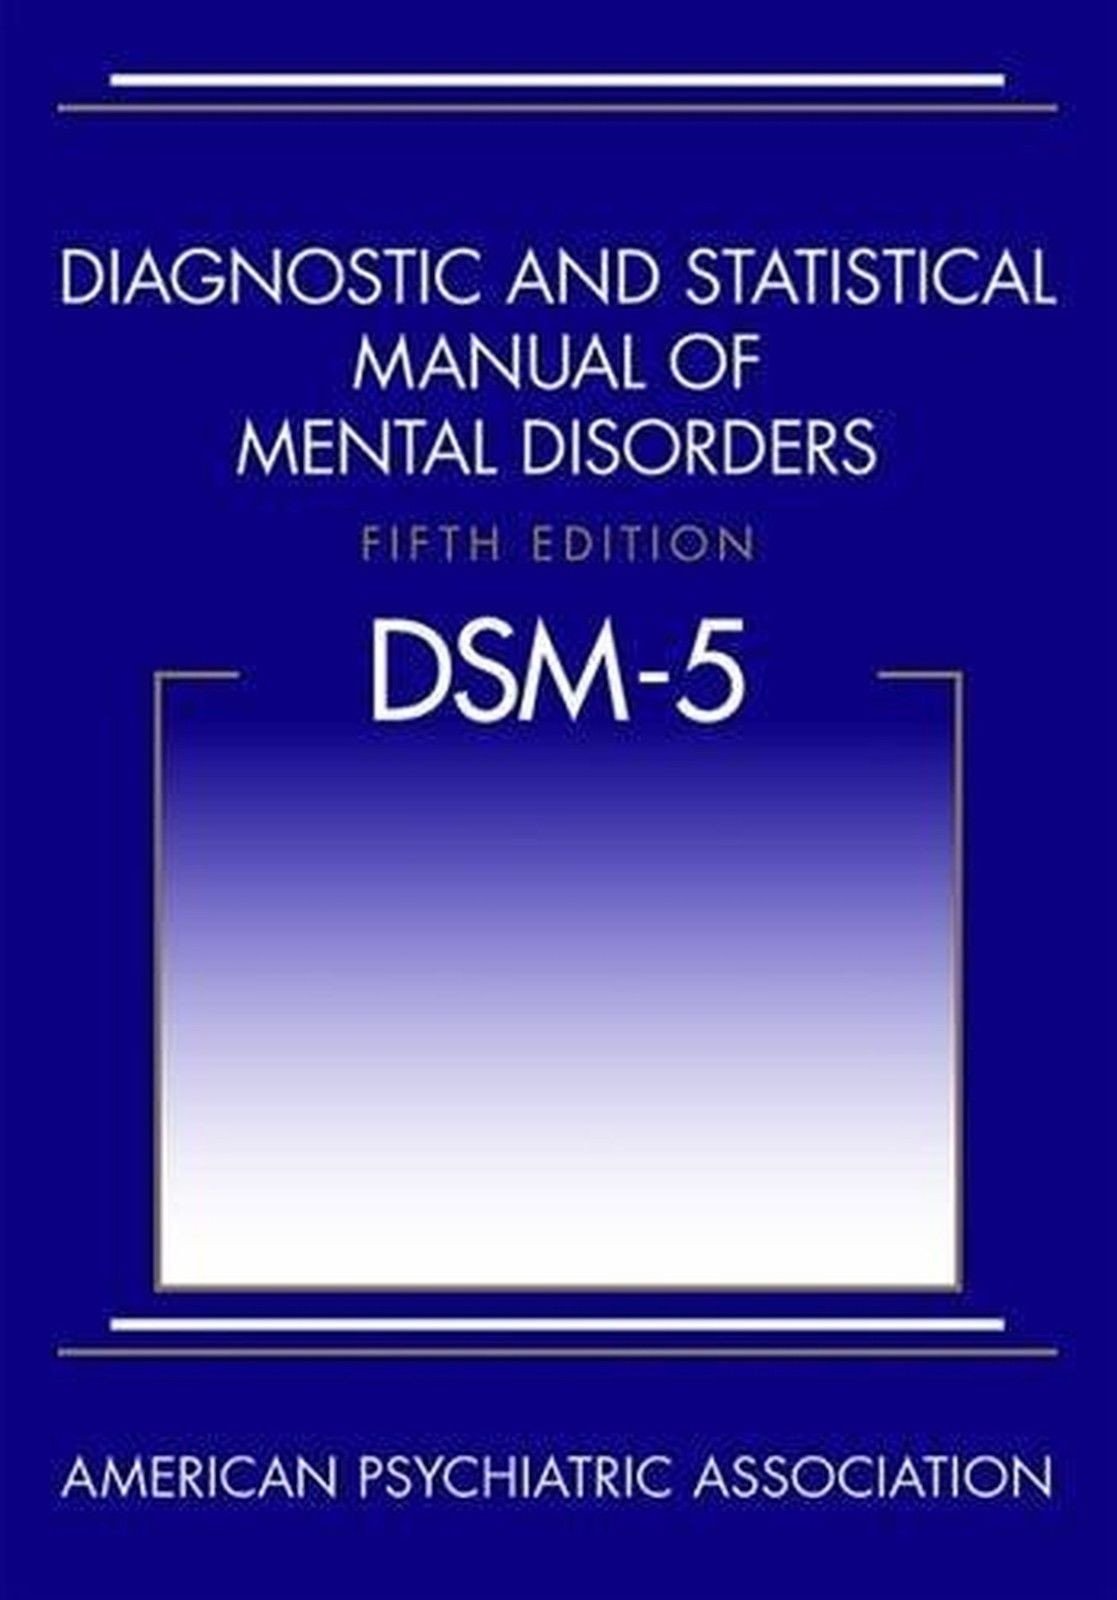 dsm 5 criteria for diagnosisng ptsd